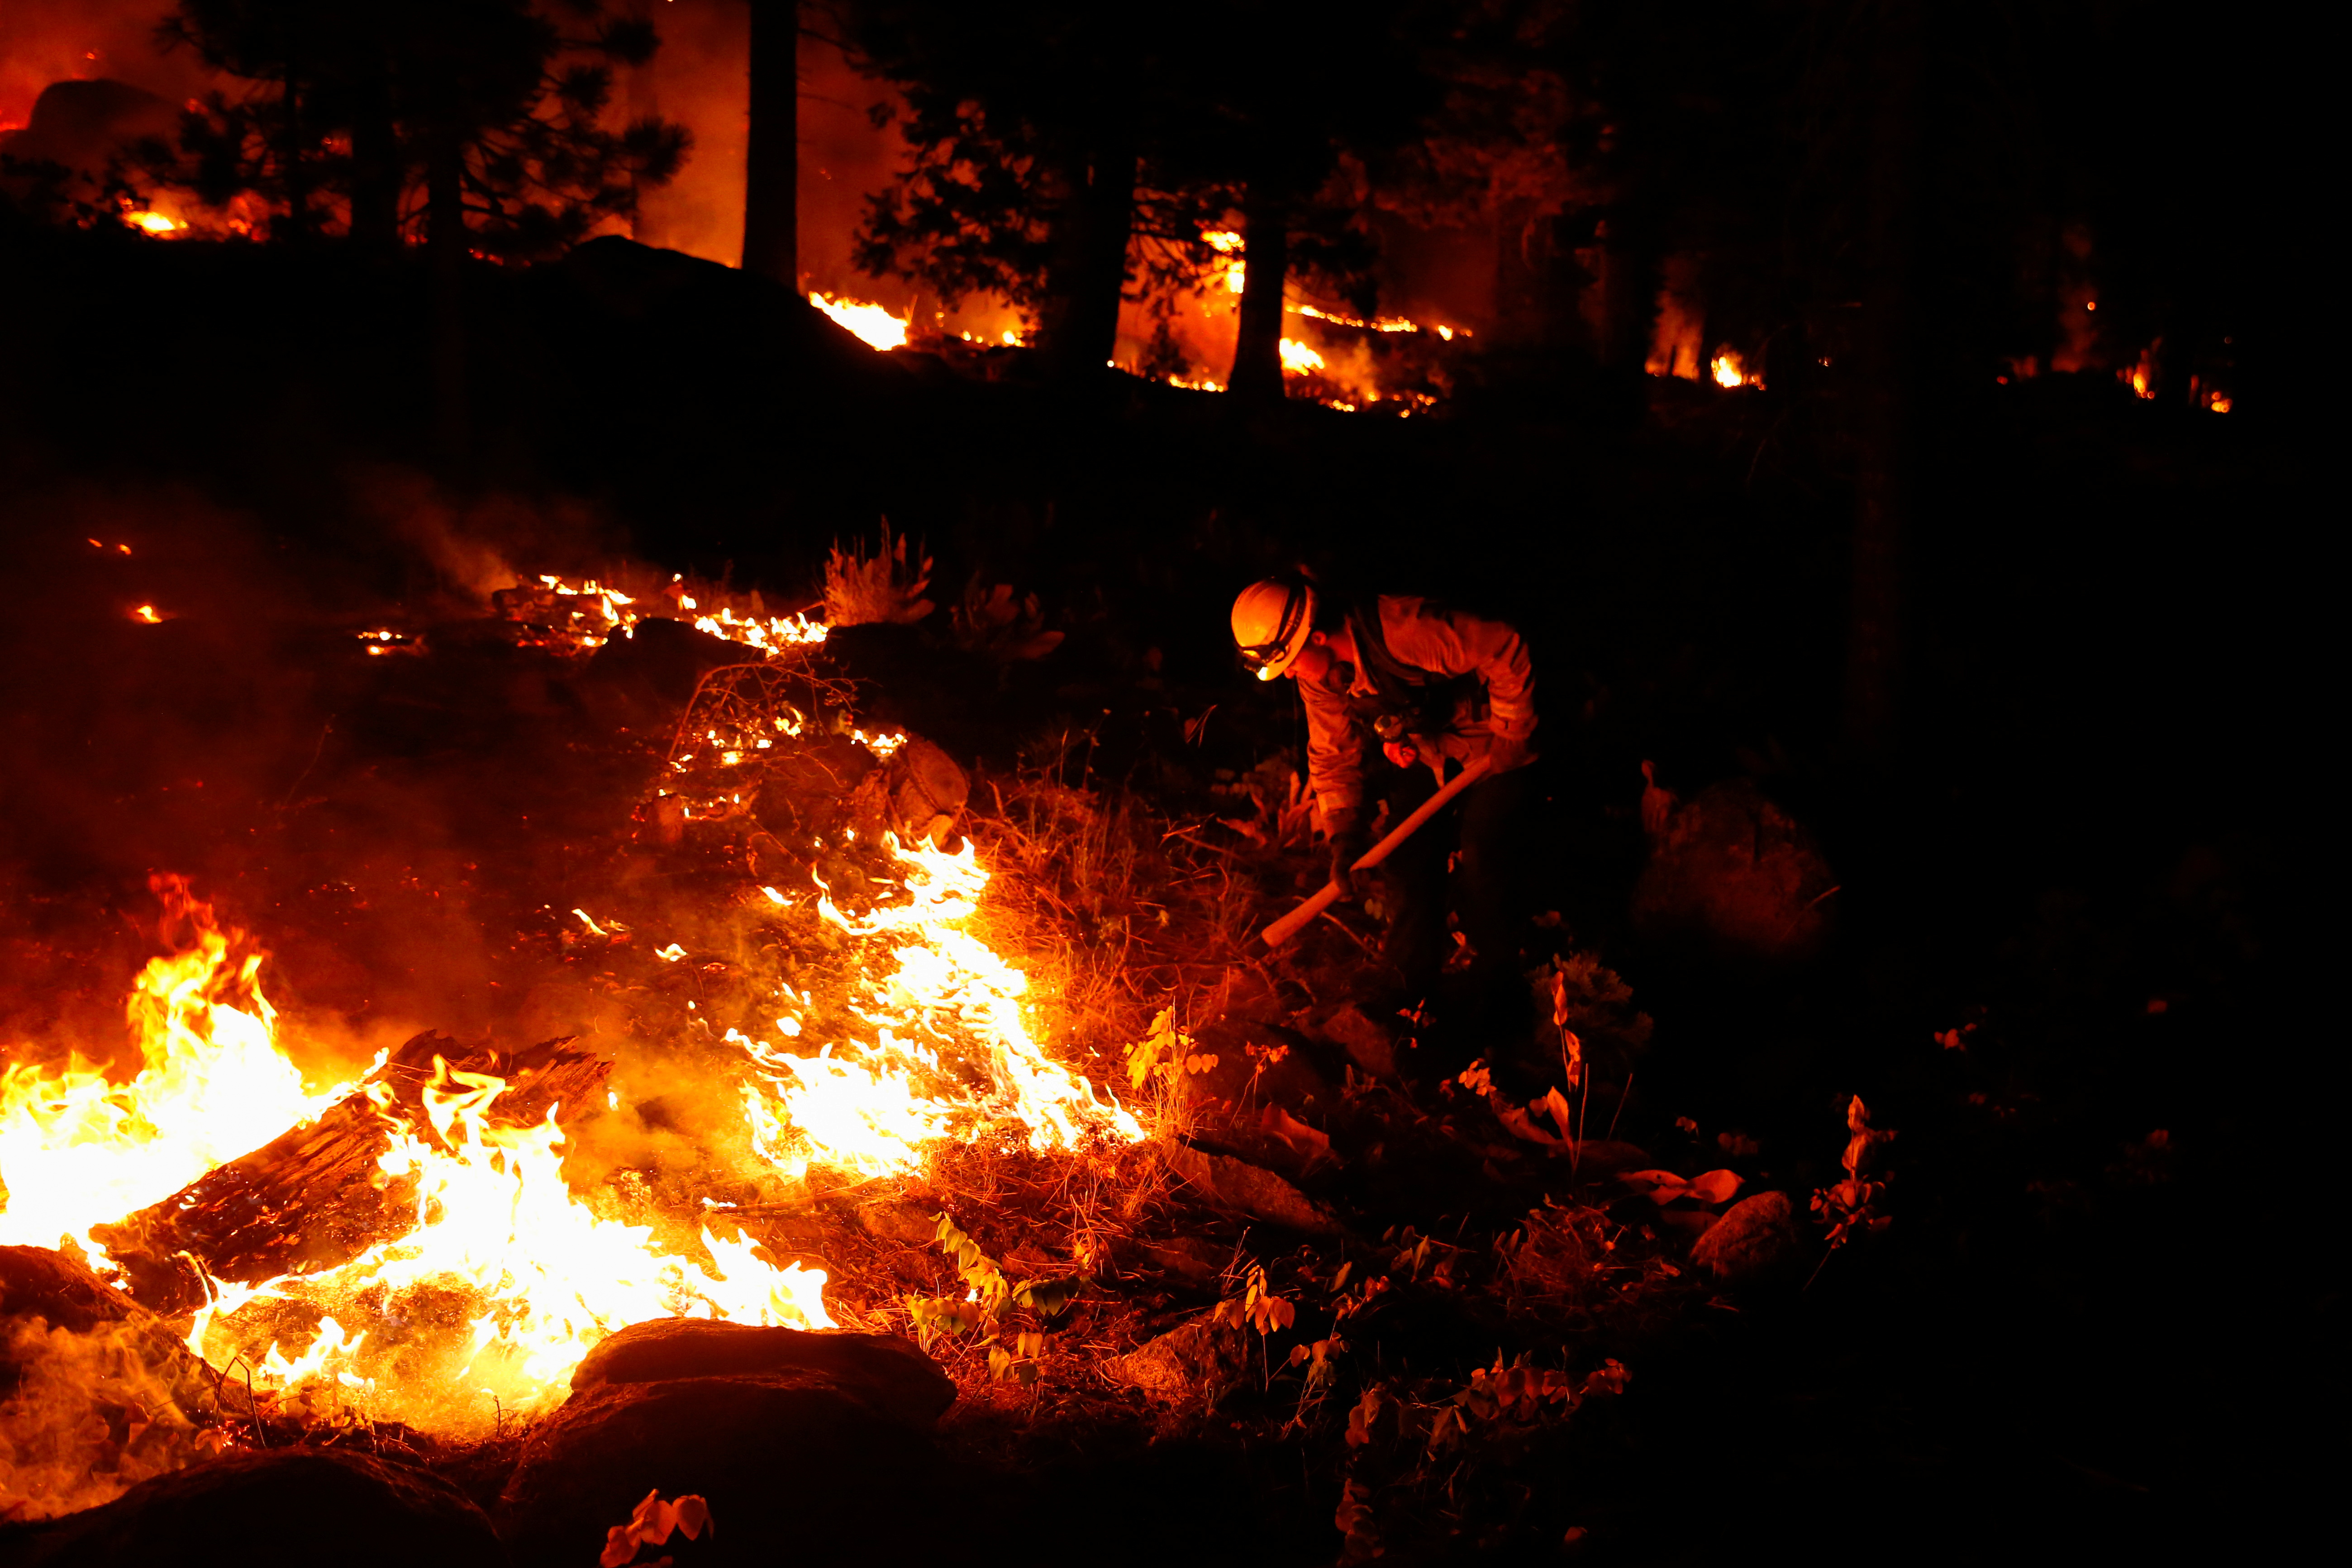 Bomberos trabajan a contrarreloj contra el fuego que quema los árboles en Christmas Valley cerca de South Lake Tahoe, California, EE.UU (Foto: Reuters).